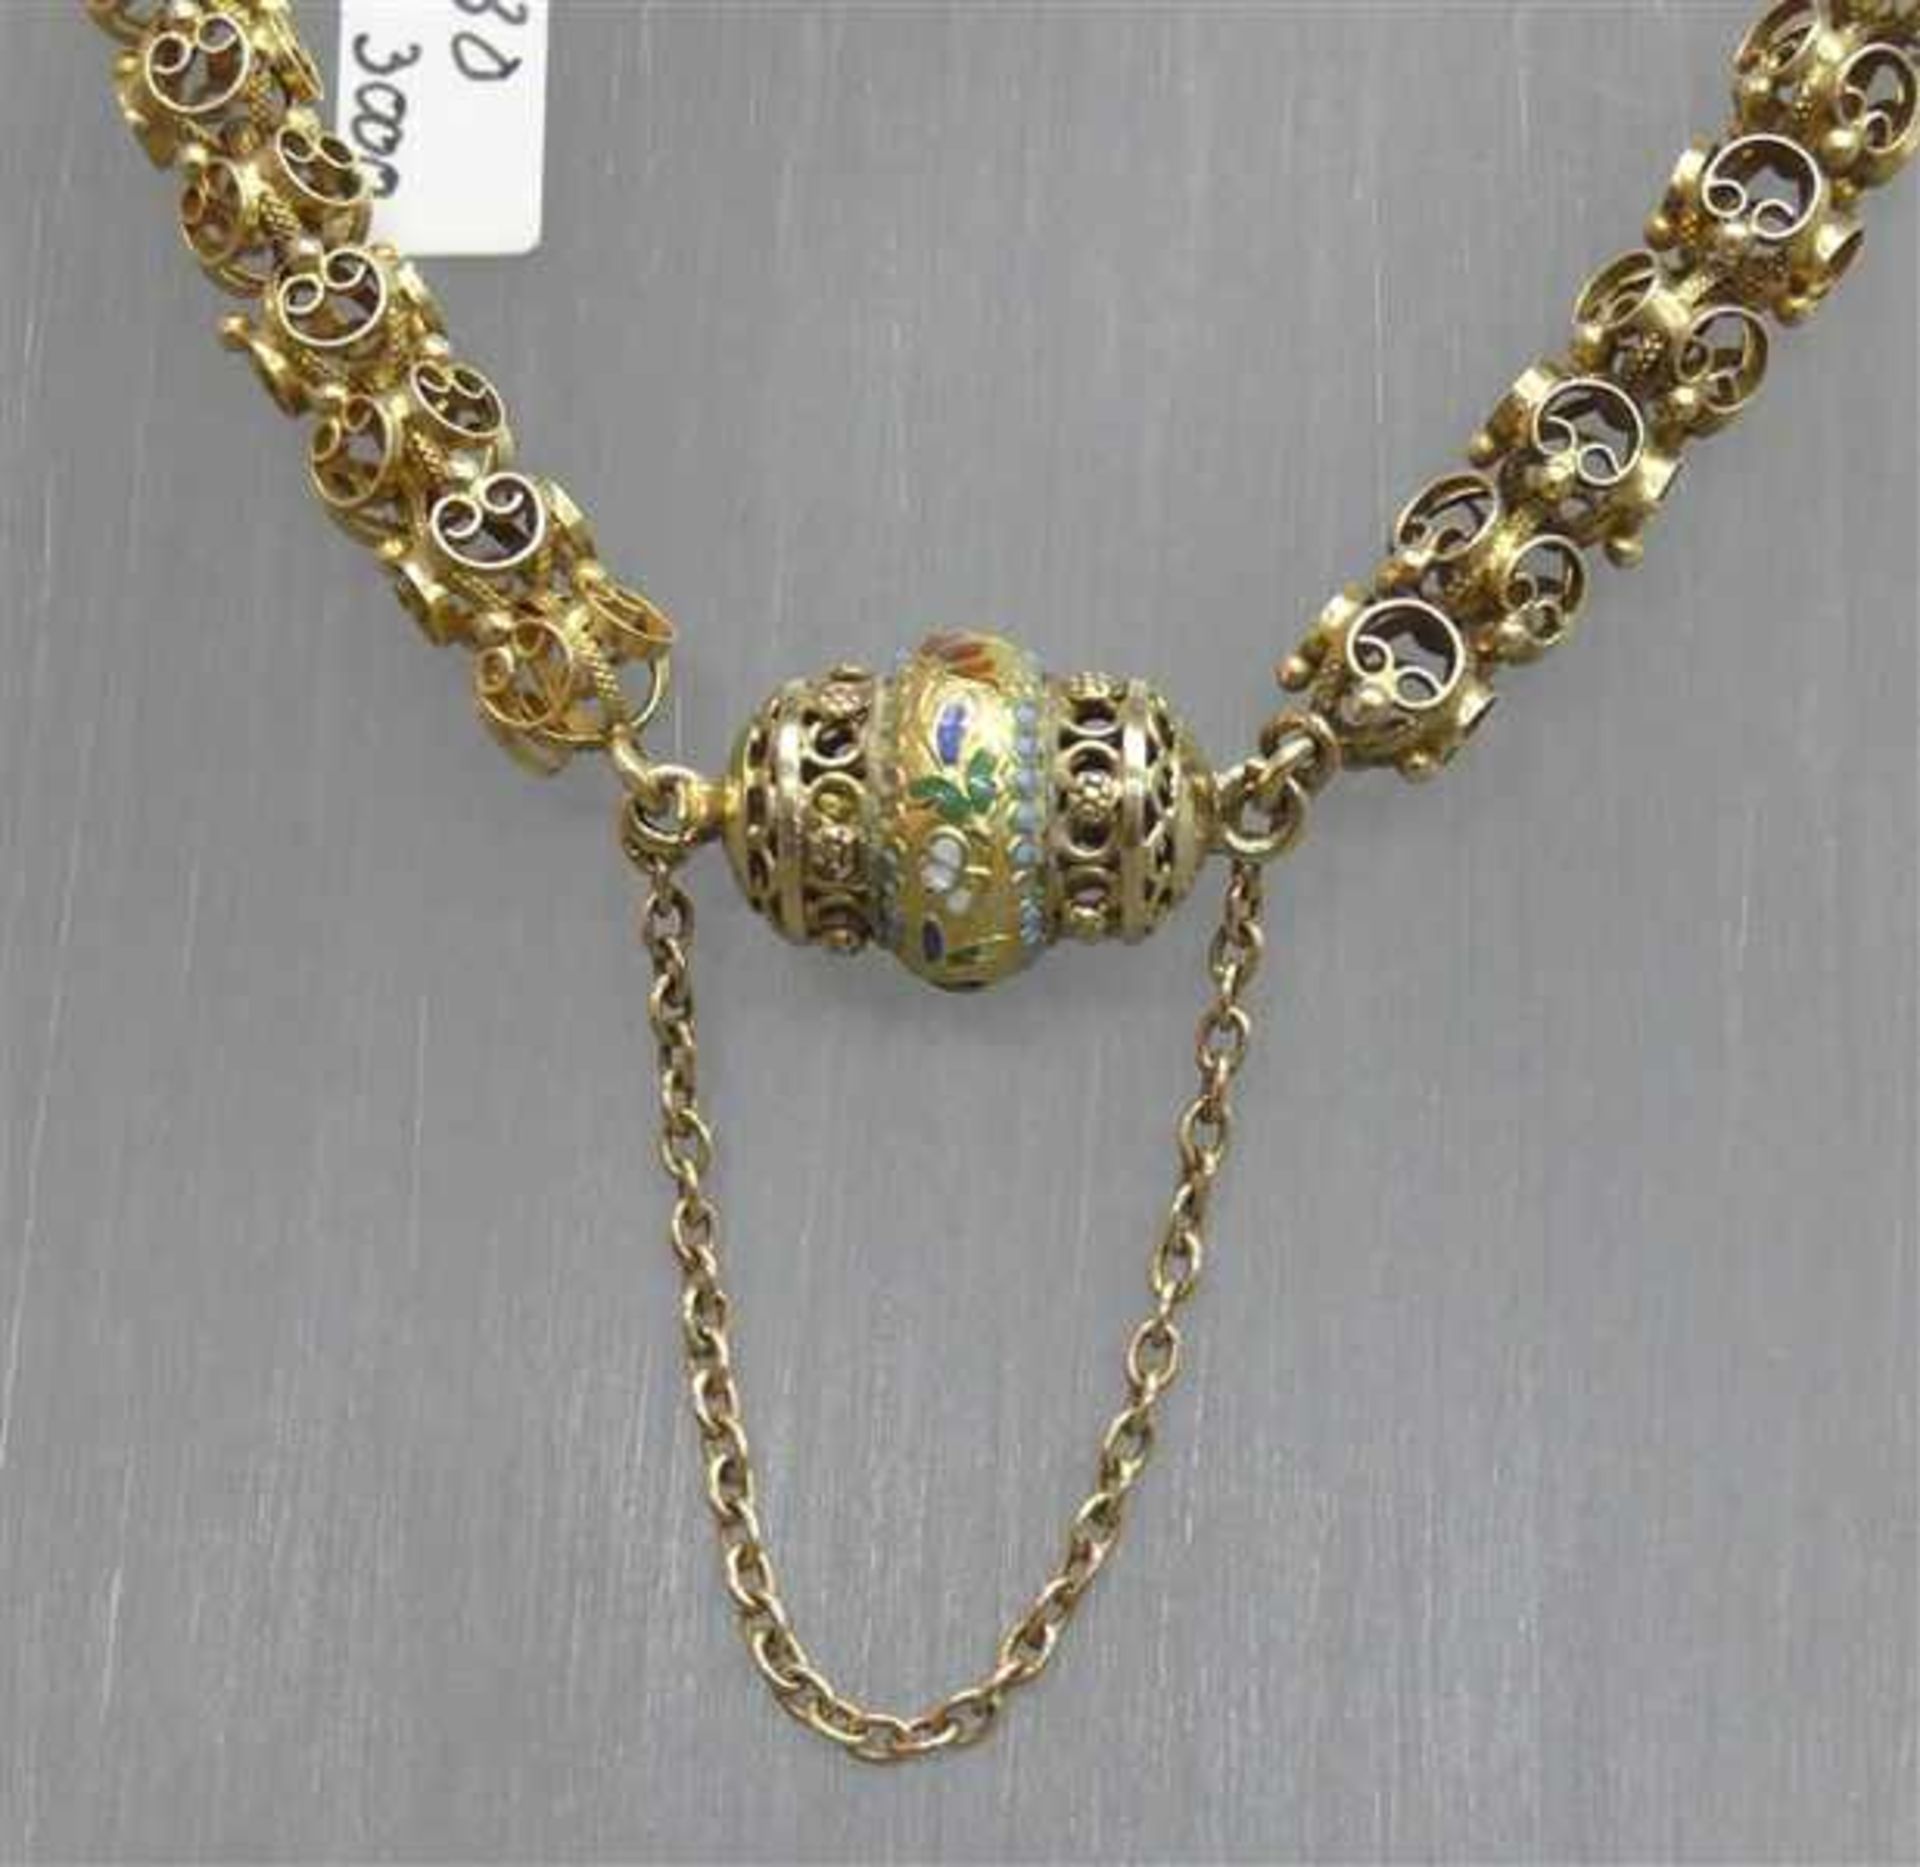 Halskette, 19. Jh. 14 kt. Gelbgold, Schloss mit farbigem Email, durchbrochen gearbeitete - Bild 2 aus 3